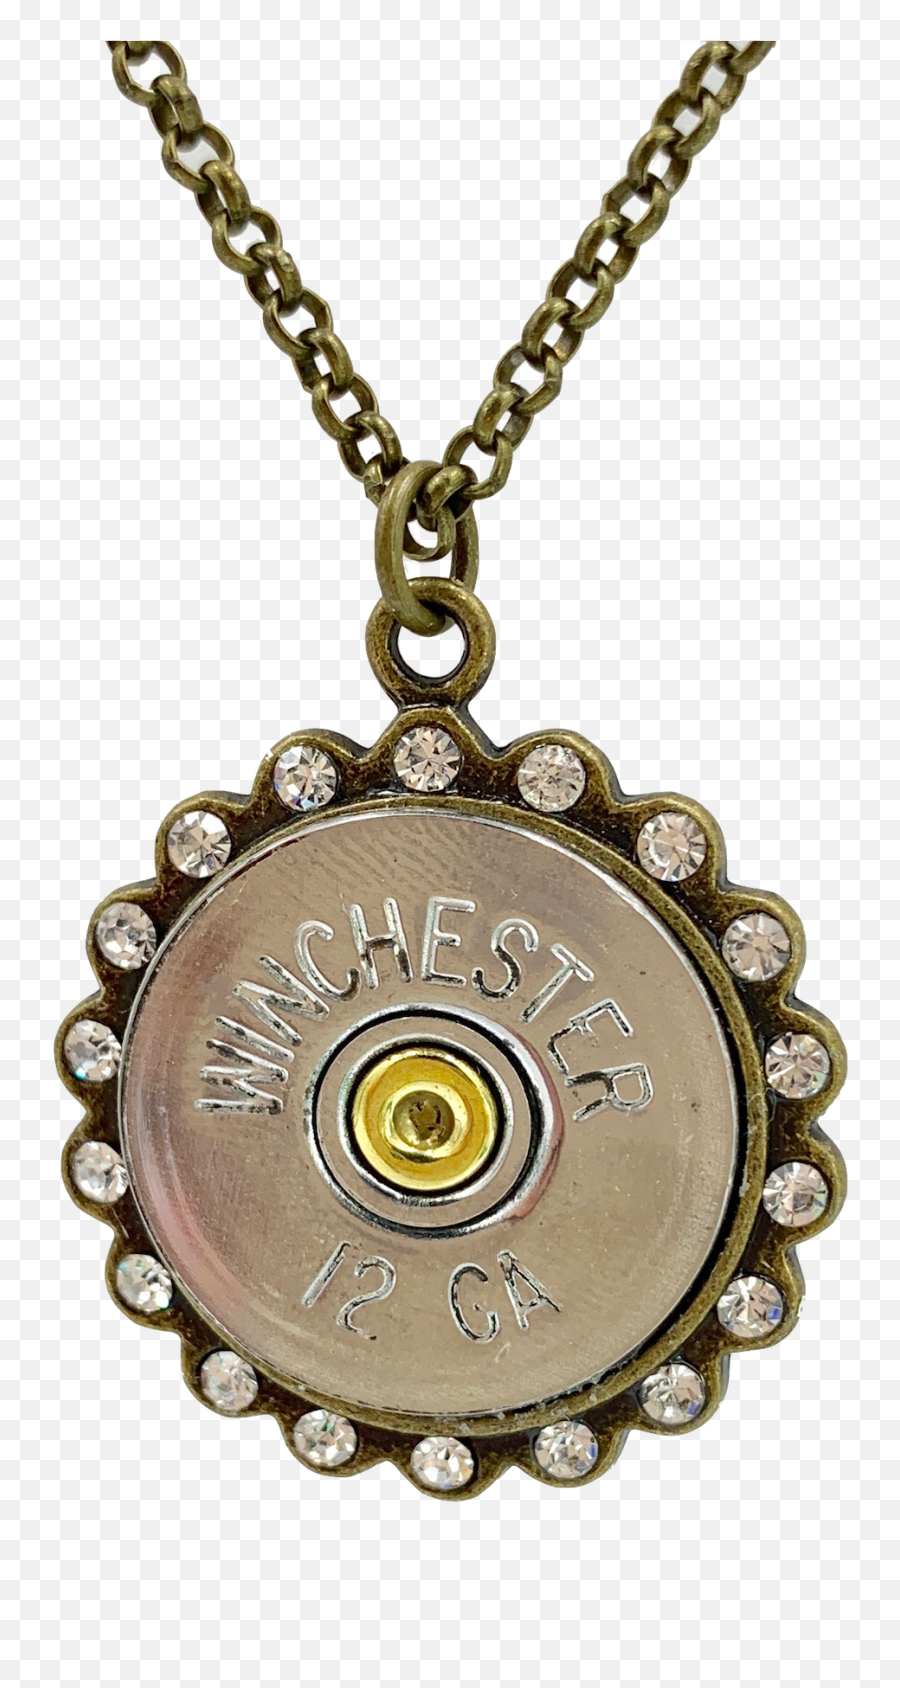 12 Gauge Brass Shotgun Necklace - Locket Png,Shotgun Shell Png